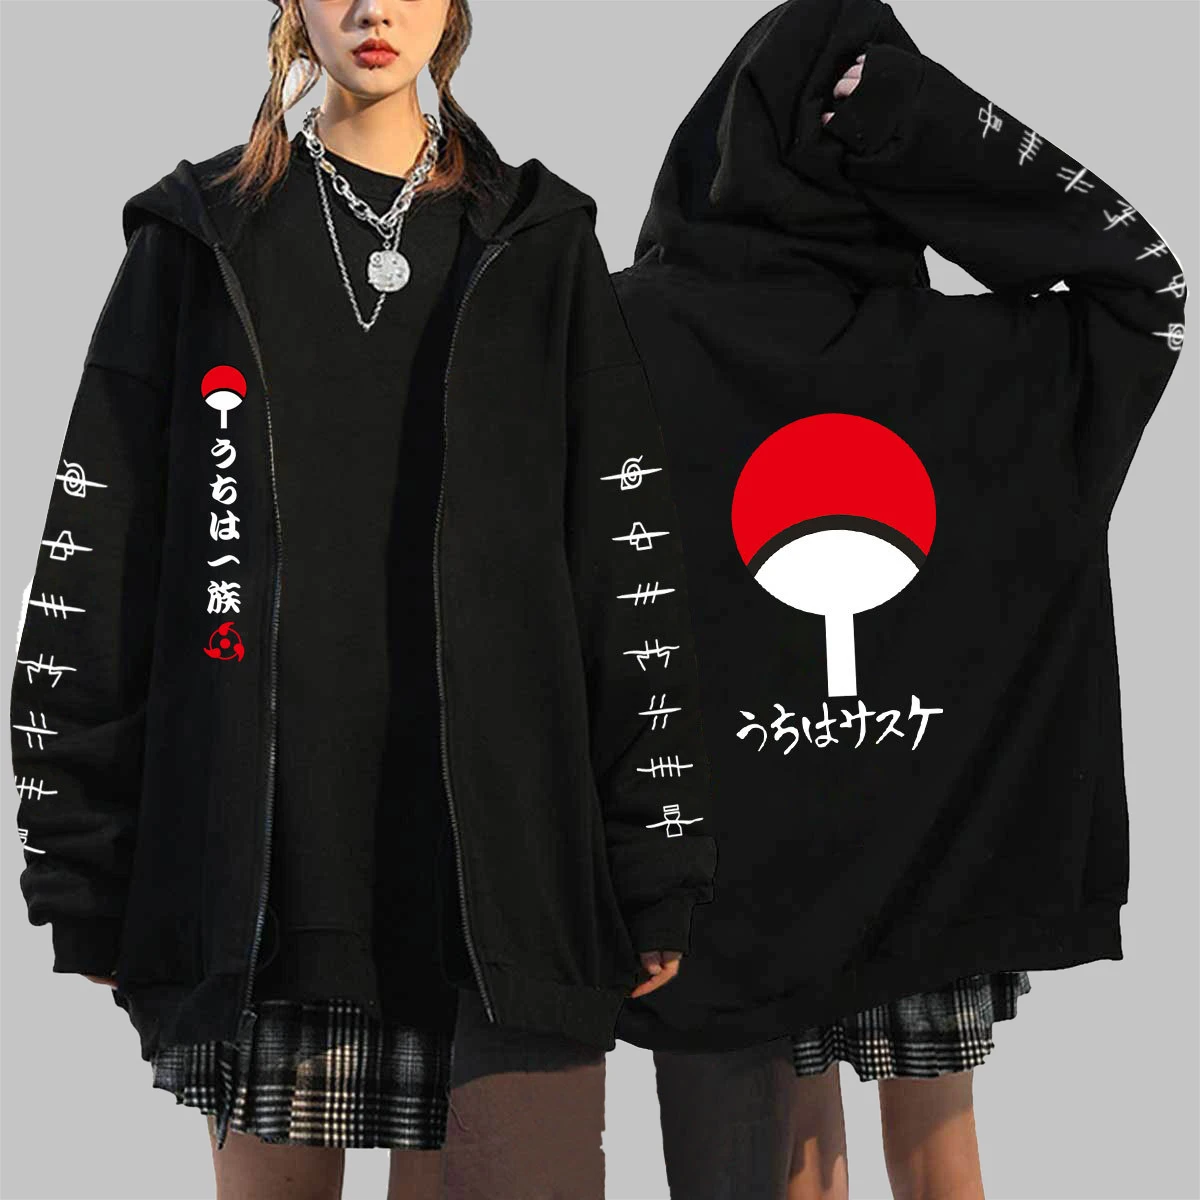 Men's Y2K Aesthetic Hoodie Cartoon Graphic Anime Print Long Sleeve Zip Up Sweatshirts Jacket 90s Gothic Coat Streetwear Pullover